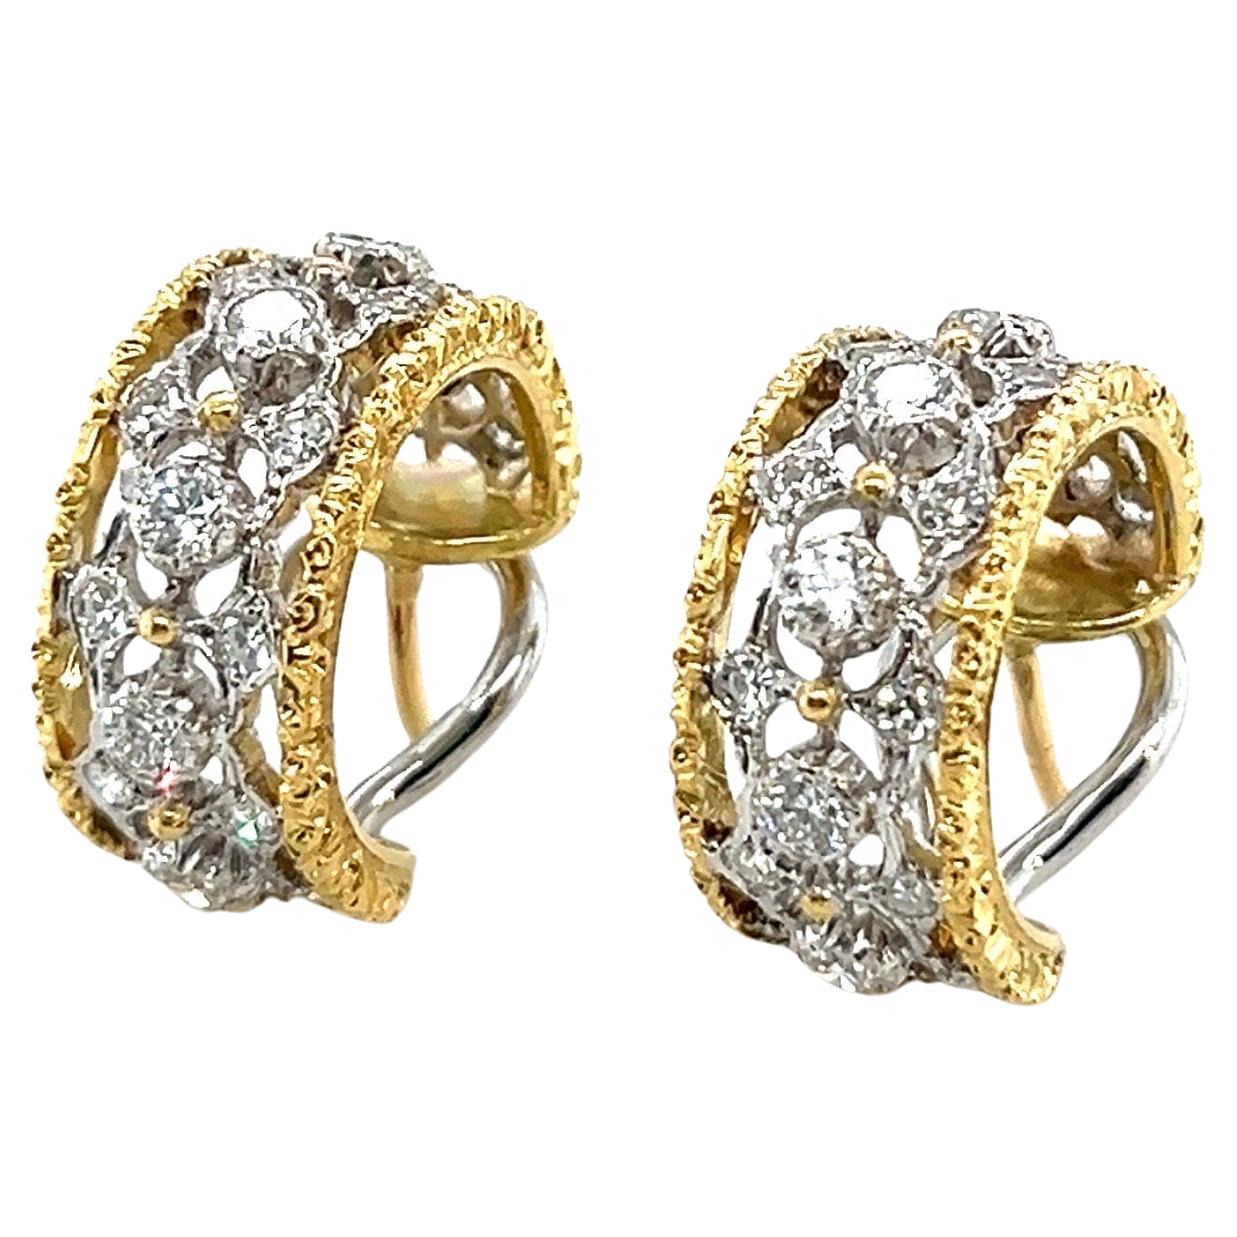 18 Karat Gold and Diamond Hoop Earrings by Mario Buccellati